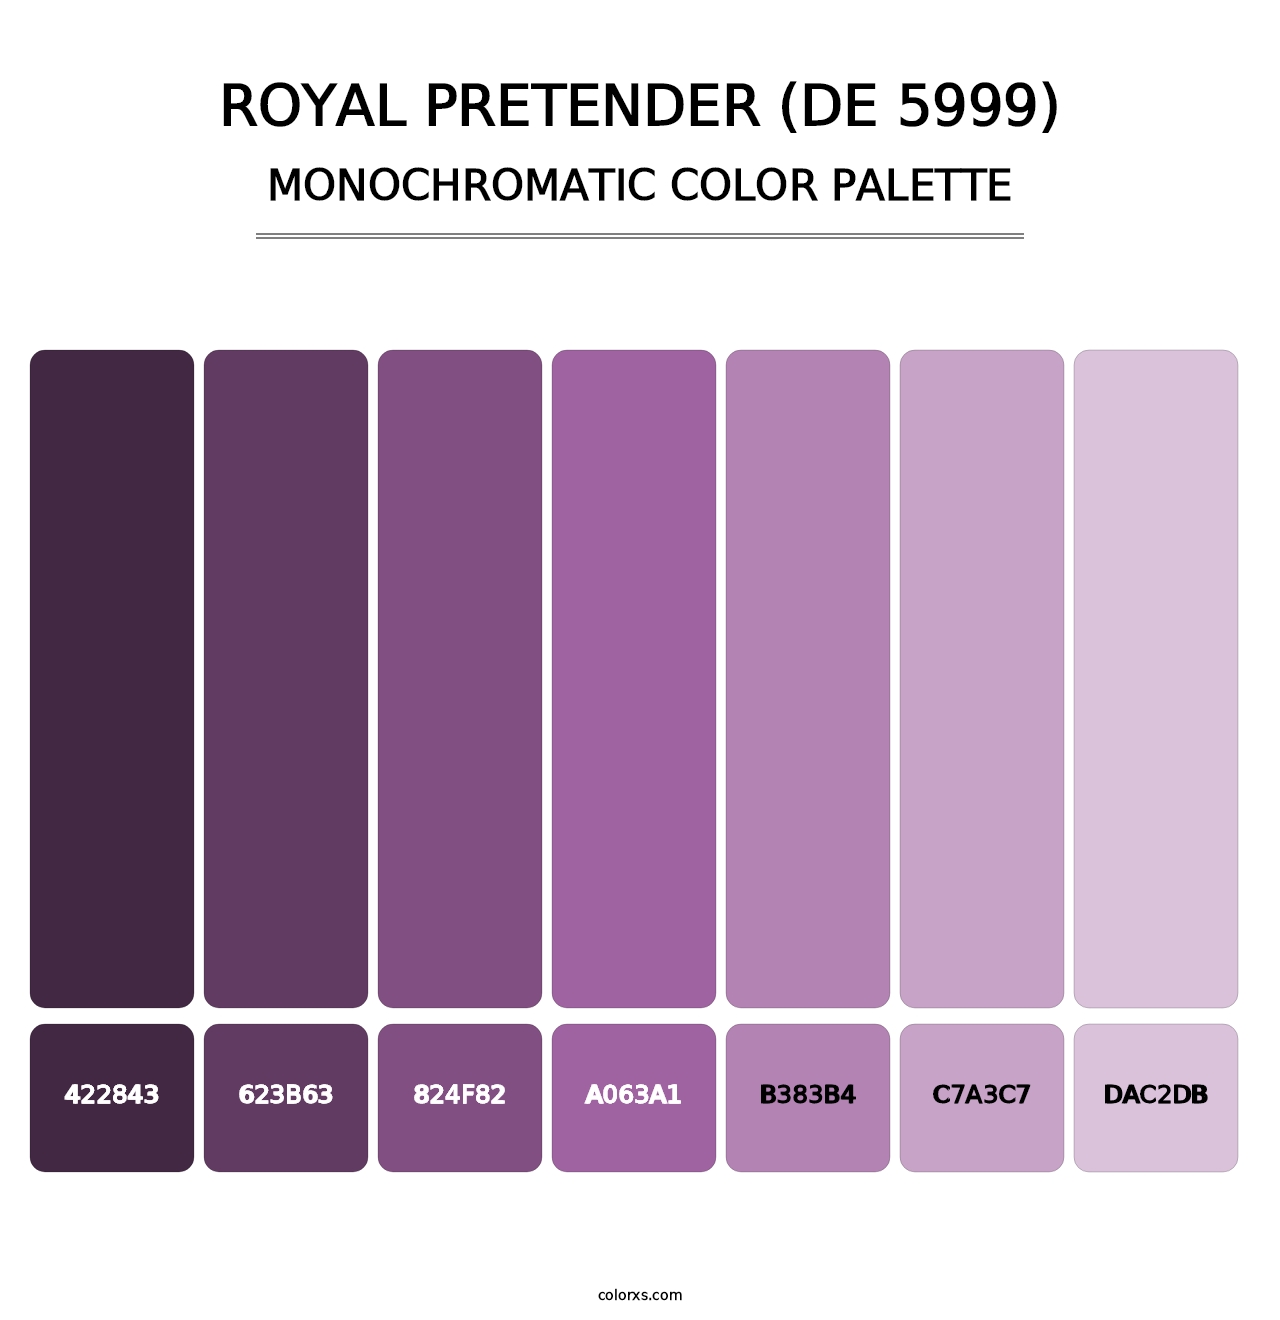 Royal Pretender (DE 5999) - Monochromatic Color Palette